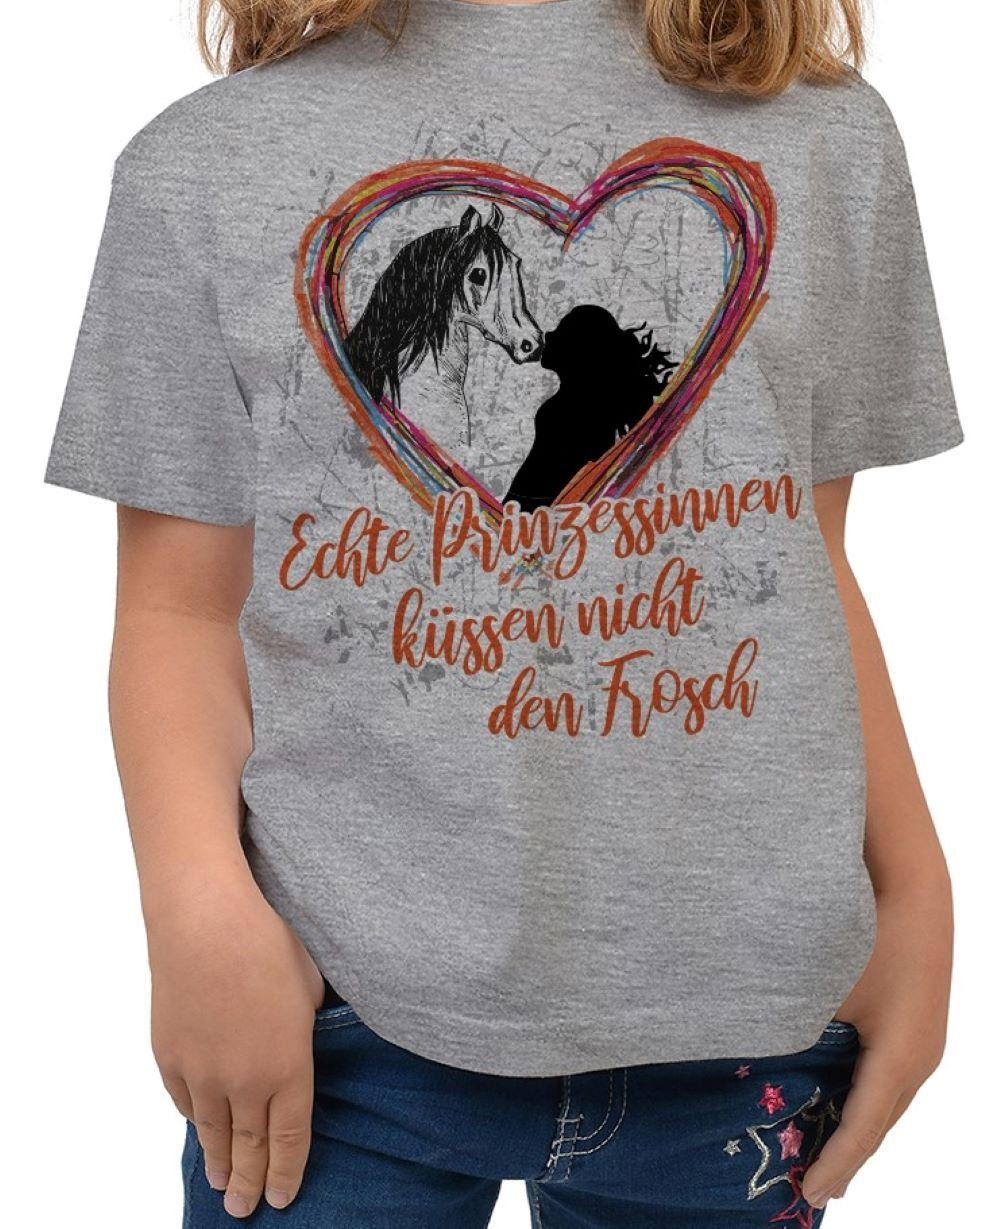 Tini - Shirts T-Shirt Mädchen Pferde Motiv Tshirt Pferde Sprüche Kinder Shirt: Echte Prinzessinnen küssen ....